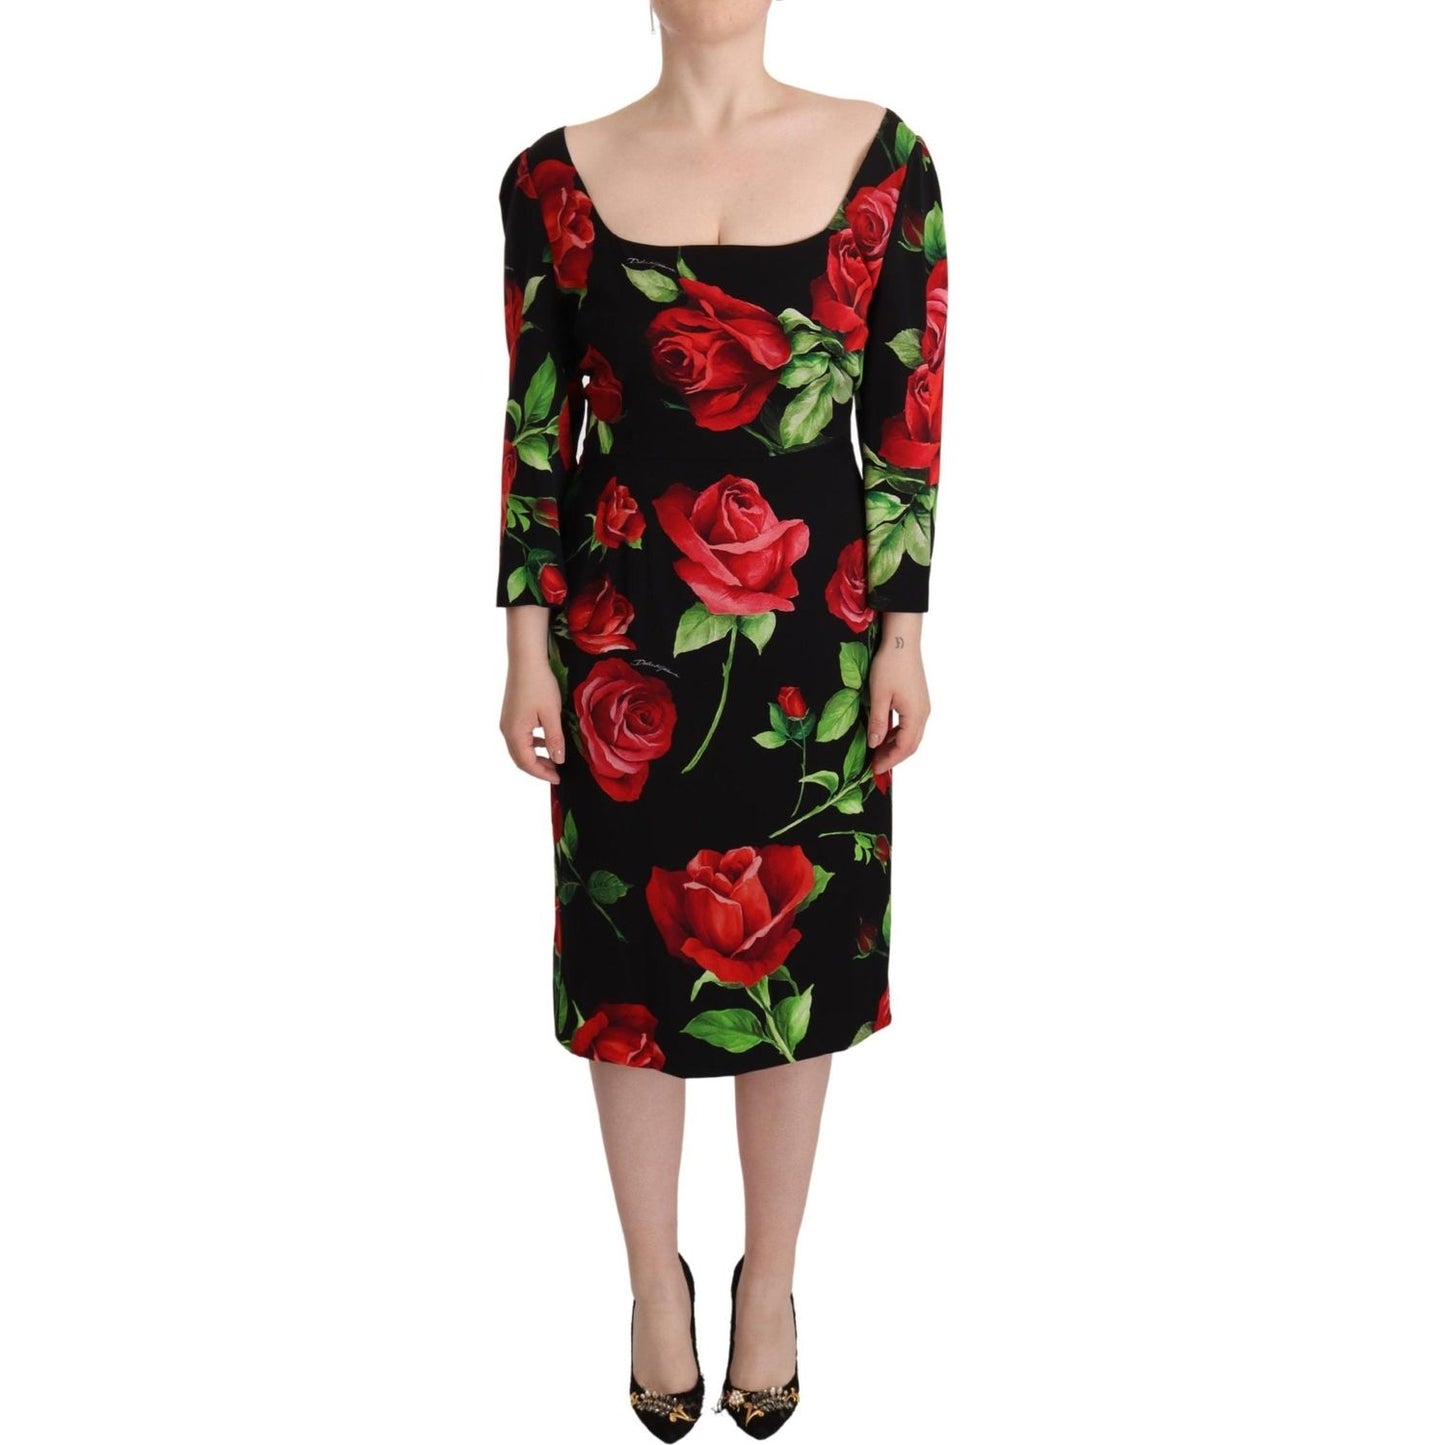 Dolce & Gabbana Elegant Floral Print Silk Sheath Dress black-red-roses-sheath-stretch-silk-dress IMG_7945-scaled-79a7ef11-41f.jpg